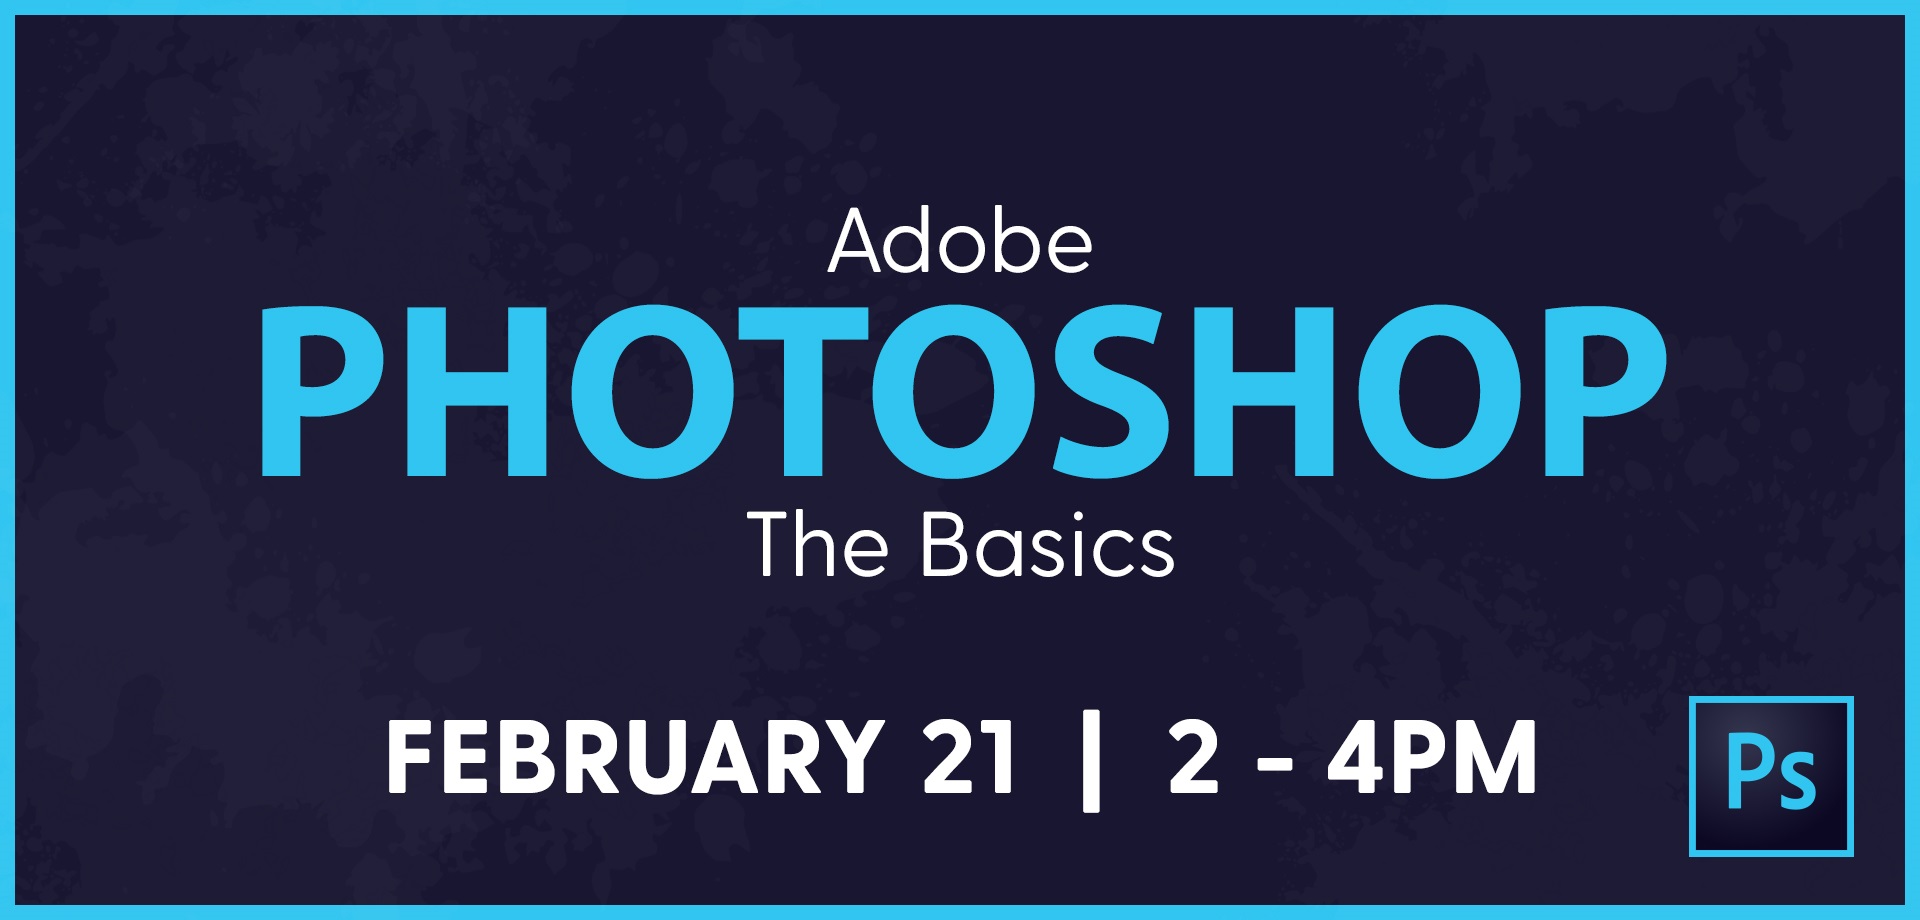 Adobe Photoshop: The Basics